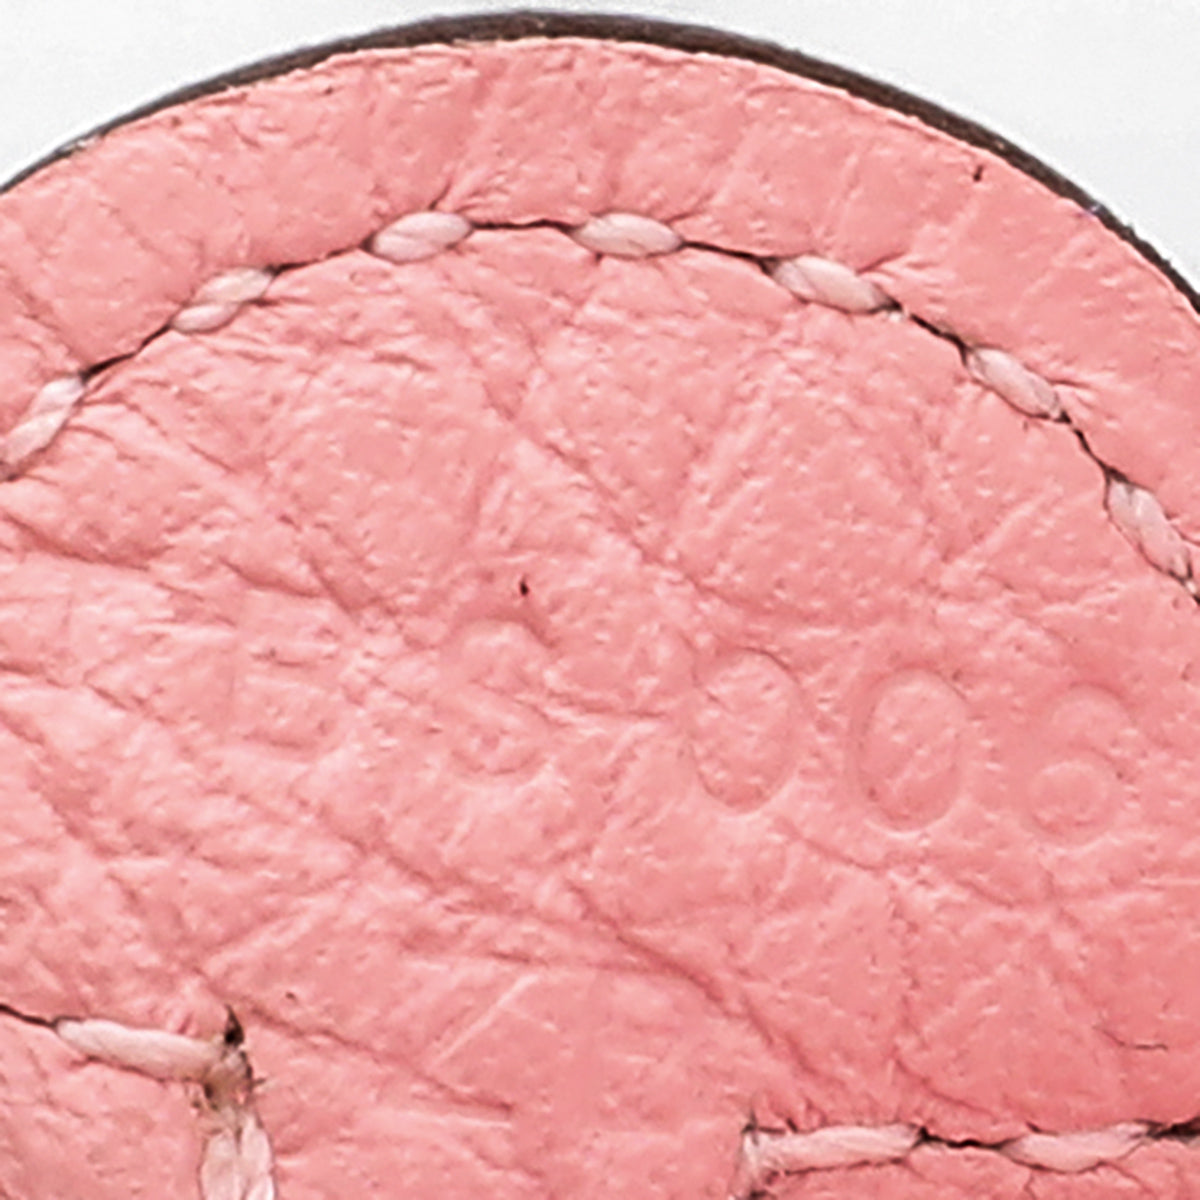 Hermes Bubblegum Pink Evelyne TPM Bag